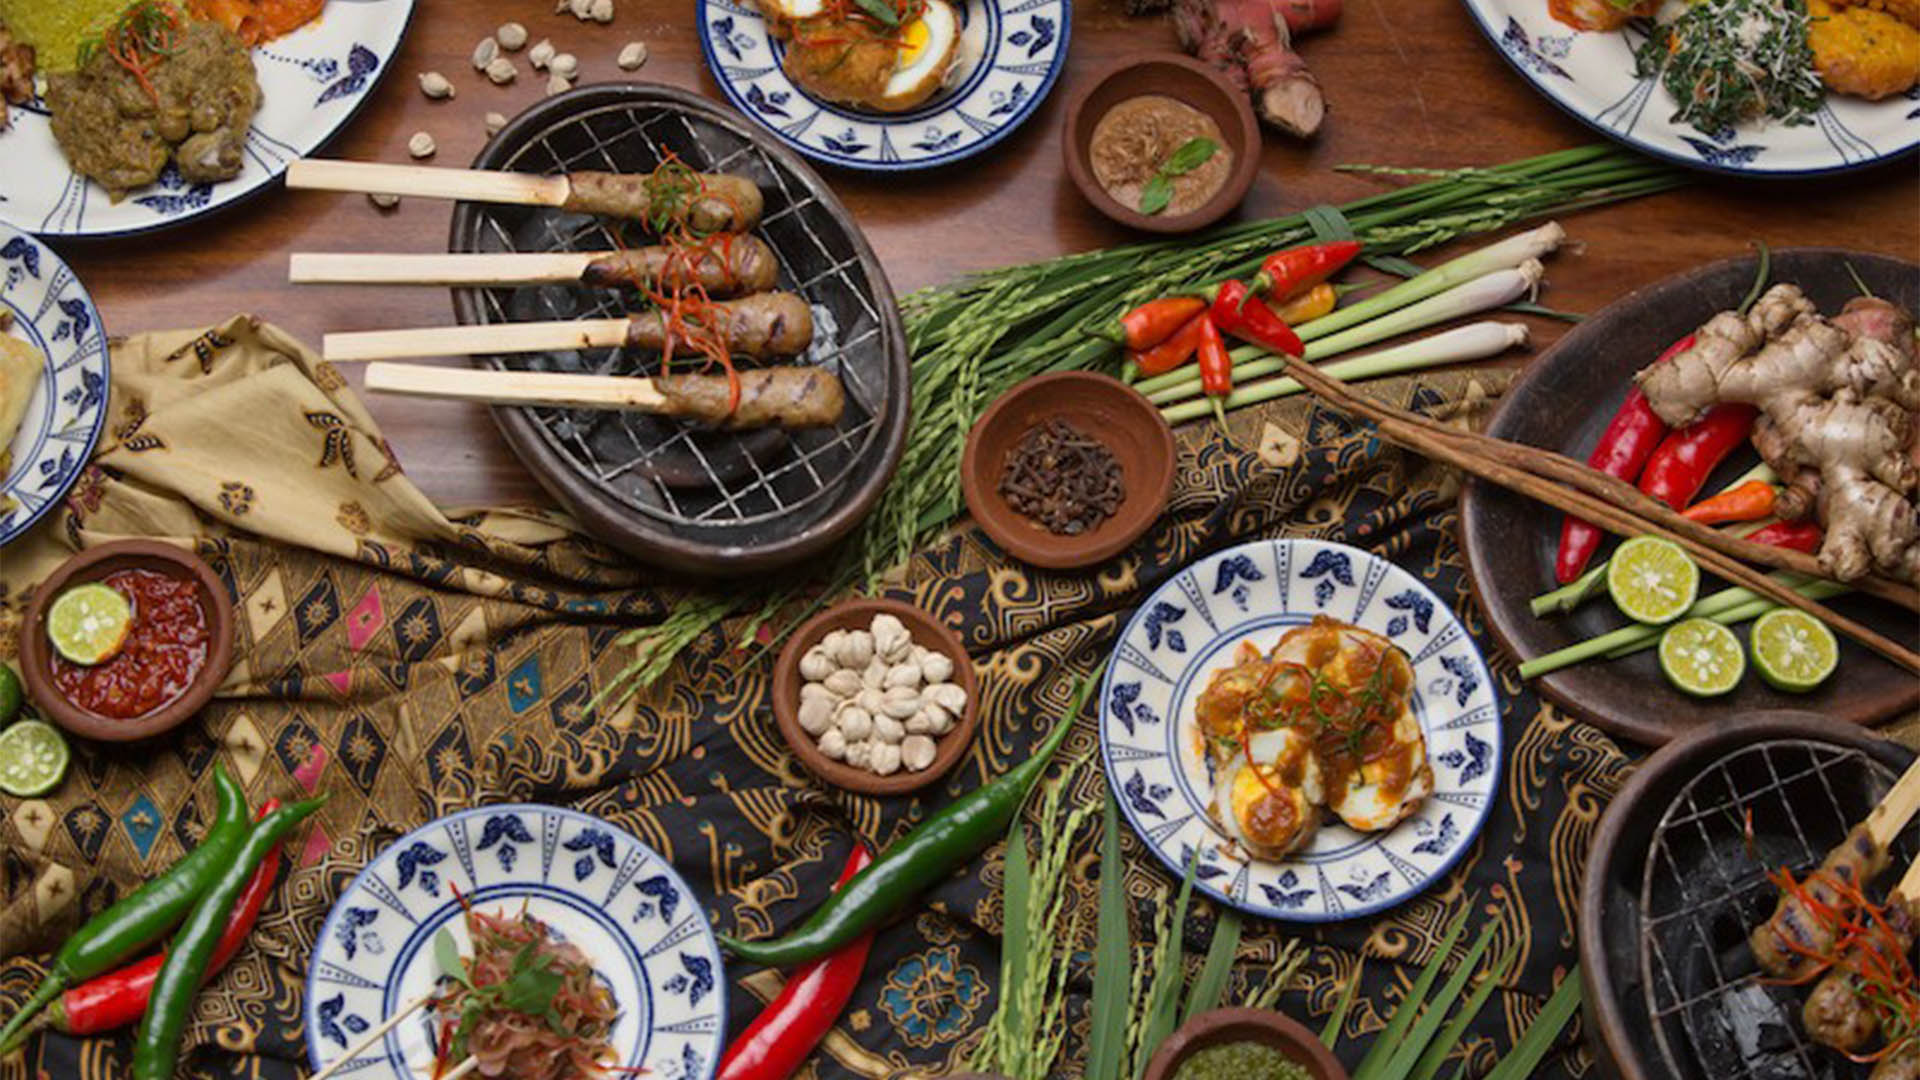 Ini 3 Kuliner Indonesia yang Terfavorit, Setuju?